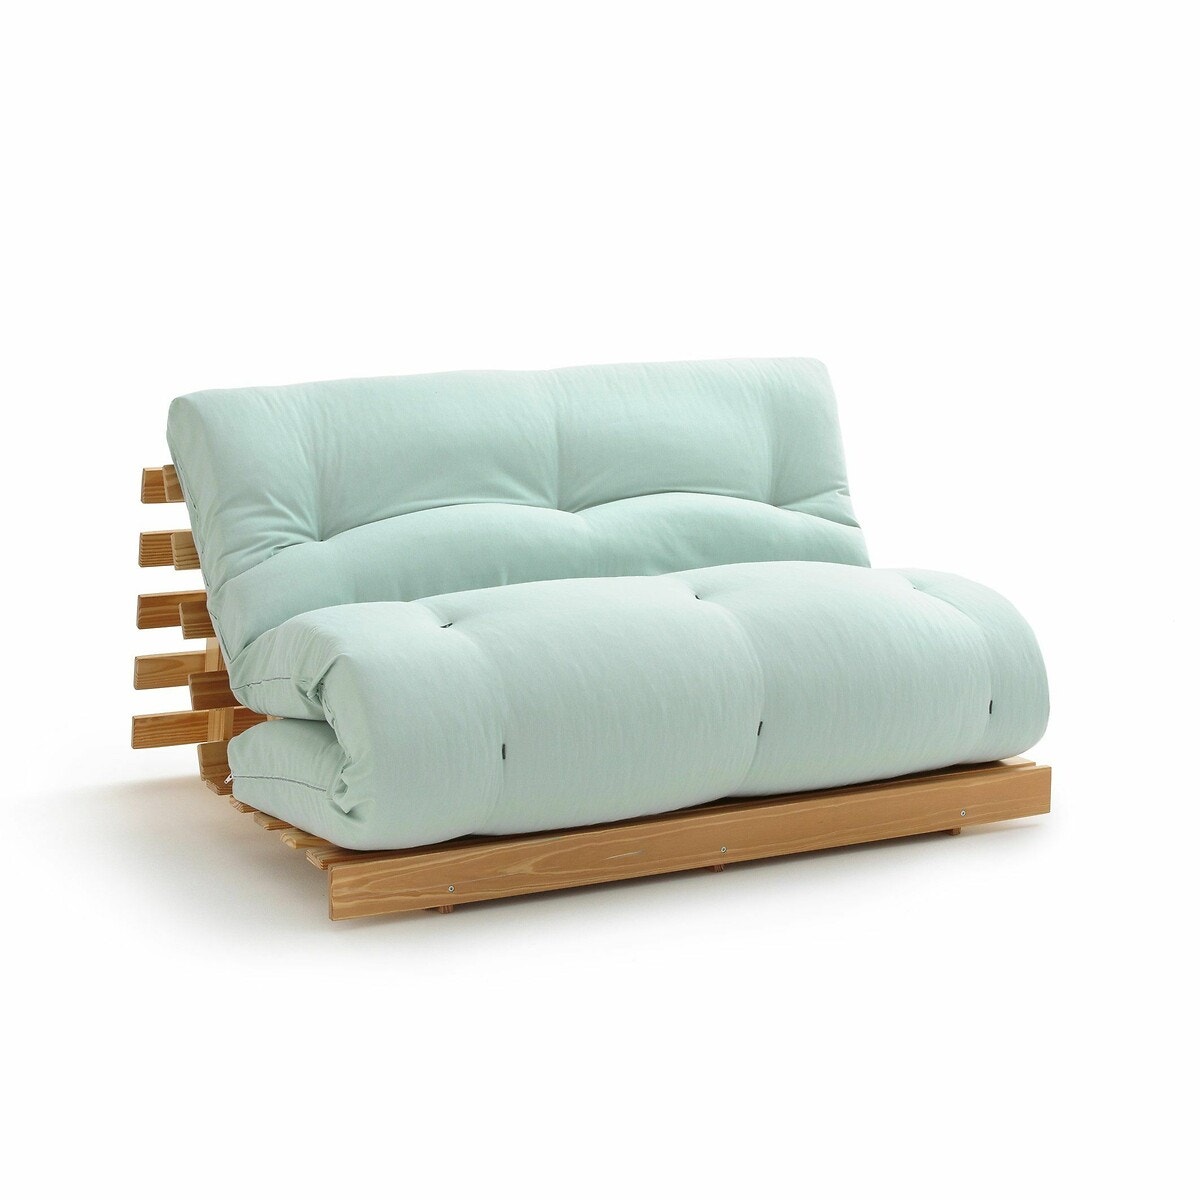 Σπίτι > Κλινοσκεπάσματα > Στρώματα > Στρώματα latex Στρώμα futon από latex για τον καναπέ THAÏ 90x190 cm